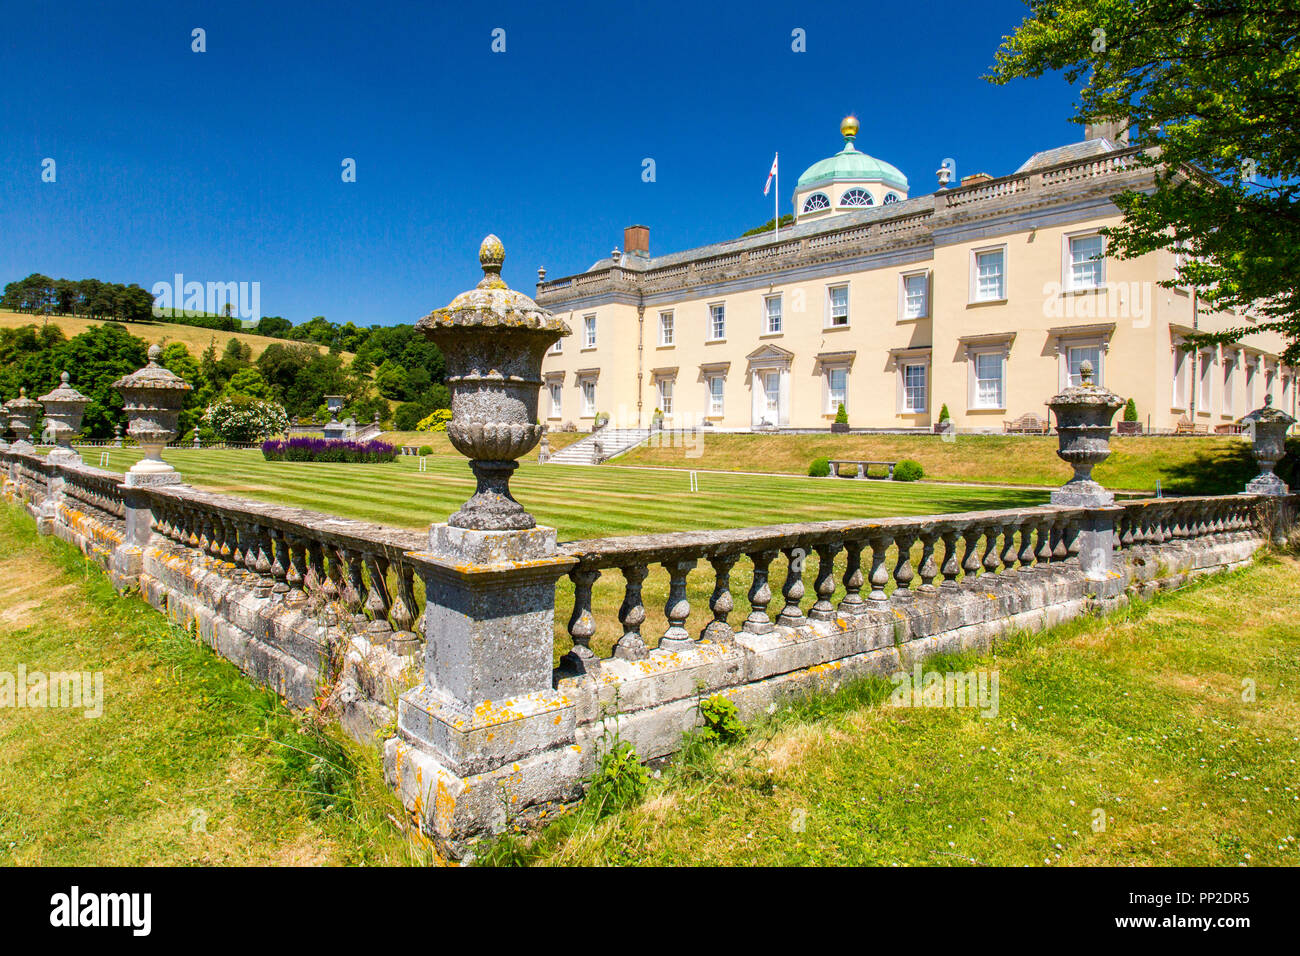 Beeindruckende palladianischen Architektur Castle Hill House und Gärten, in der Nähe von Filleigh, Devon, England, Großbritannien Stockfoto